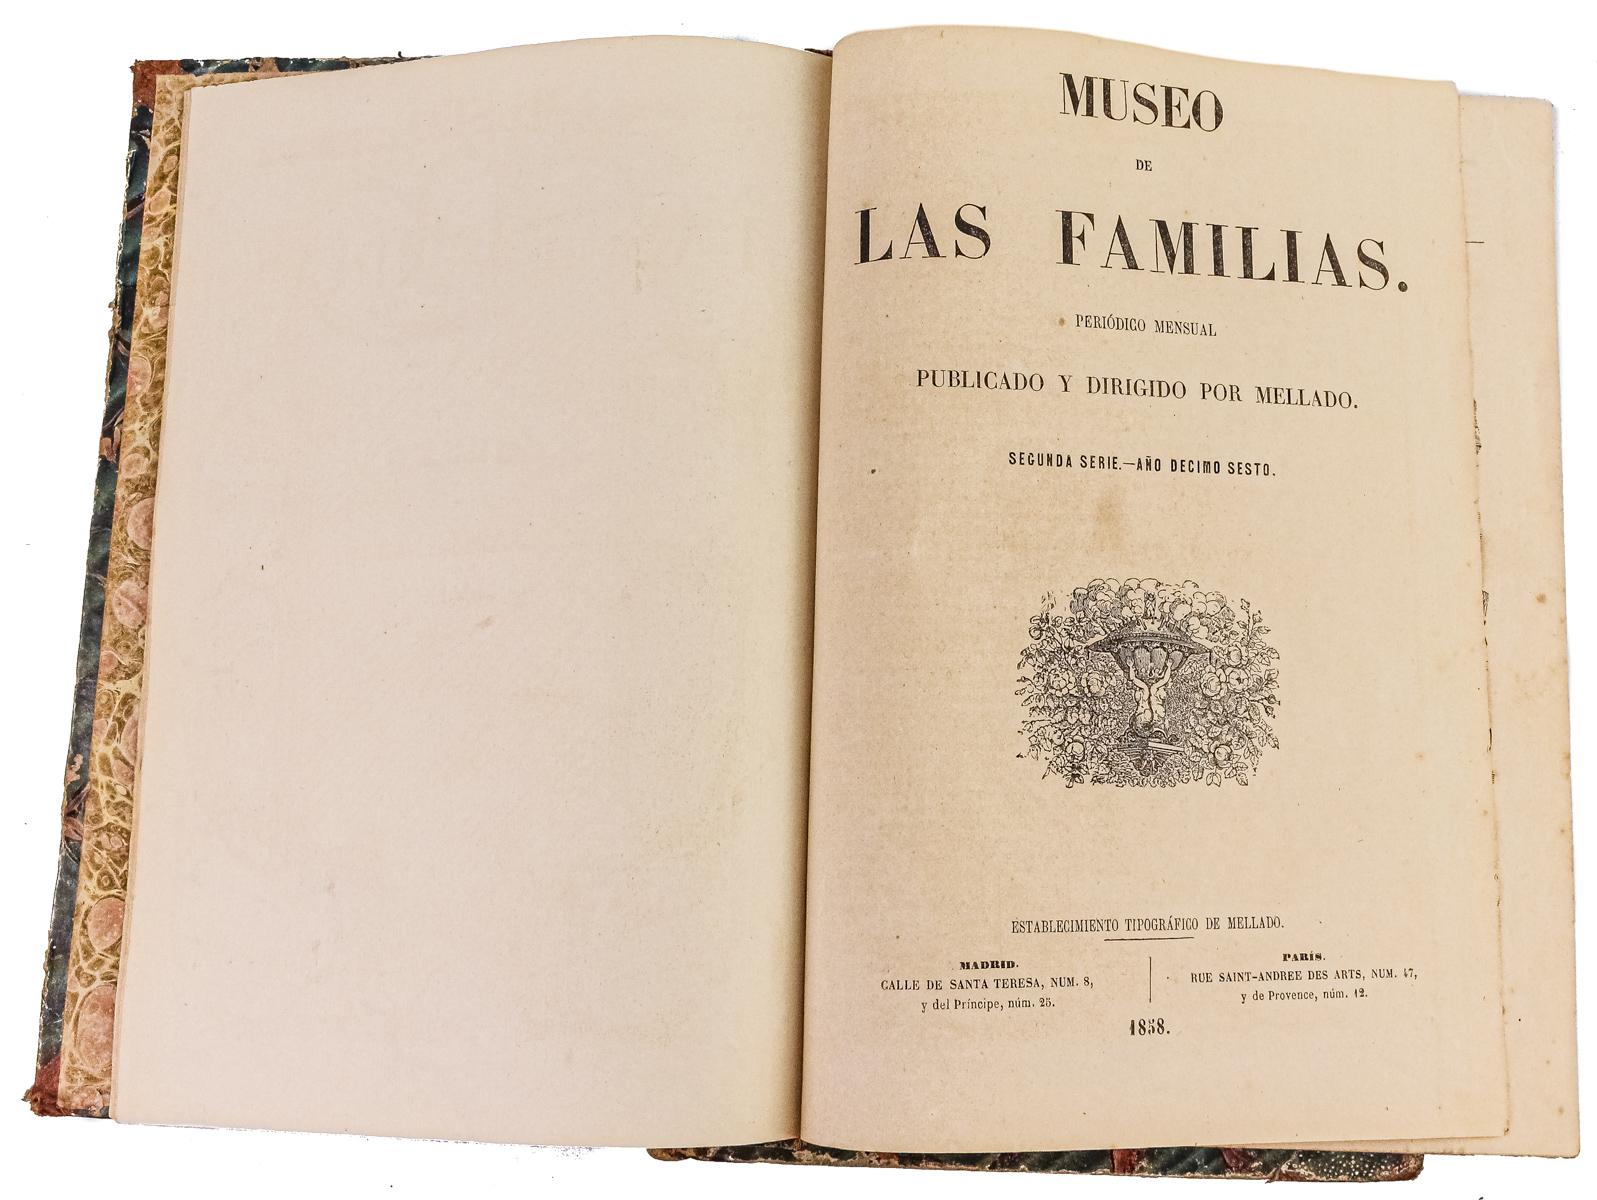 "MUSEO DE LAS FAMILIAS"